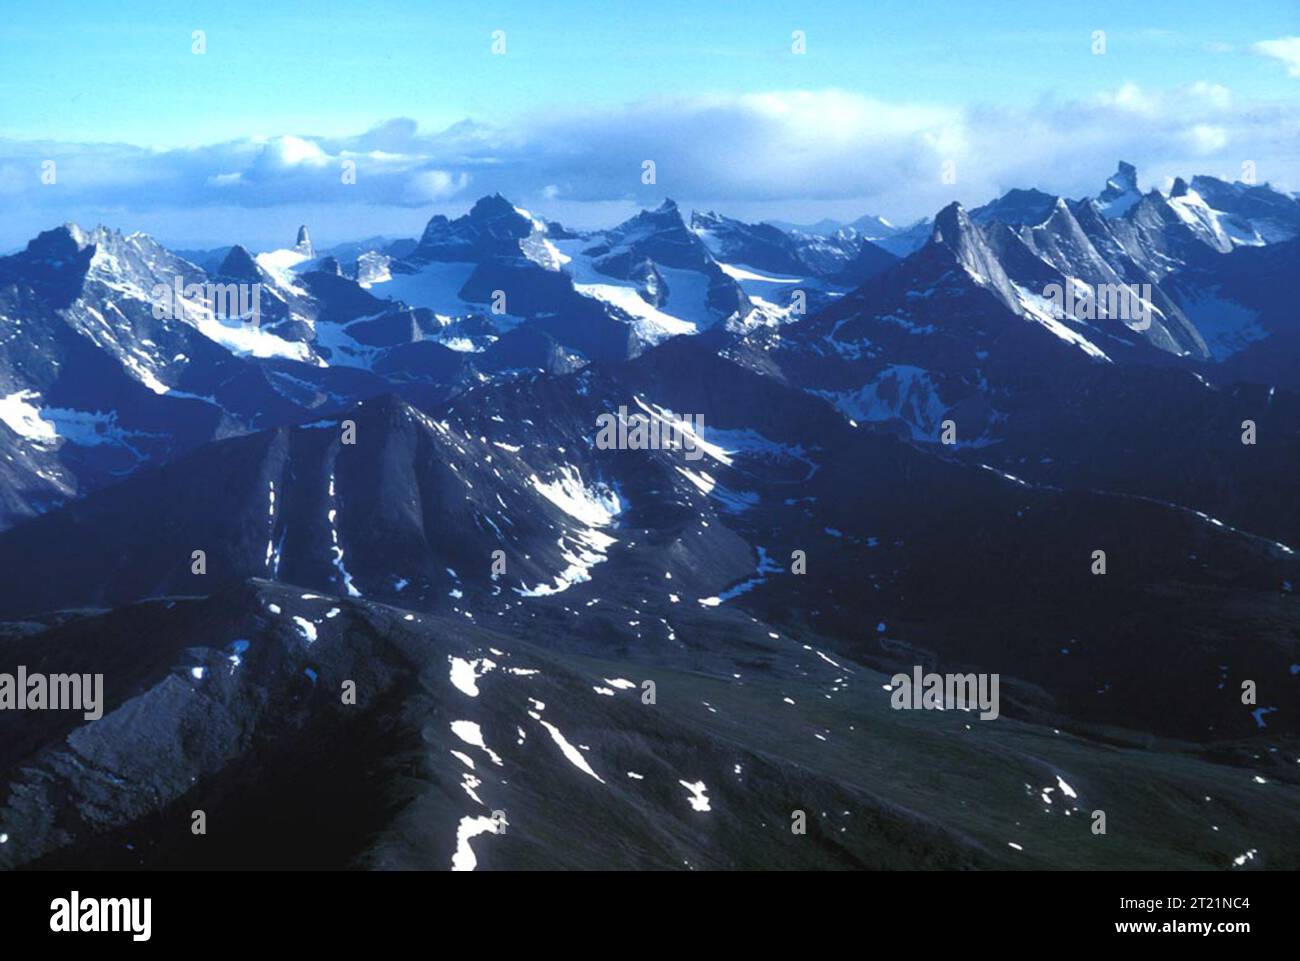 Vista aerea di Arrigetch Peaks, Gates of the Arctic National Park e Preserve in Alaska. Soggetti: Scenics; Mountains; Snow. Località: Alaska. . 1998 - 2011. Foto Stock